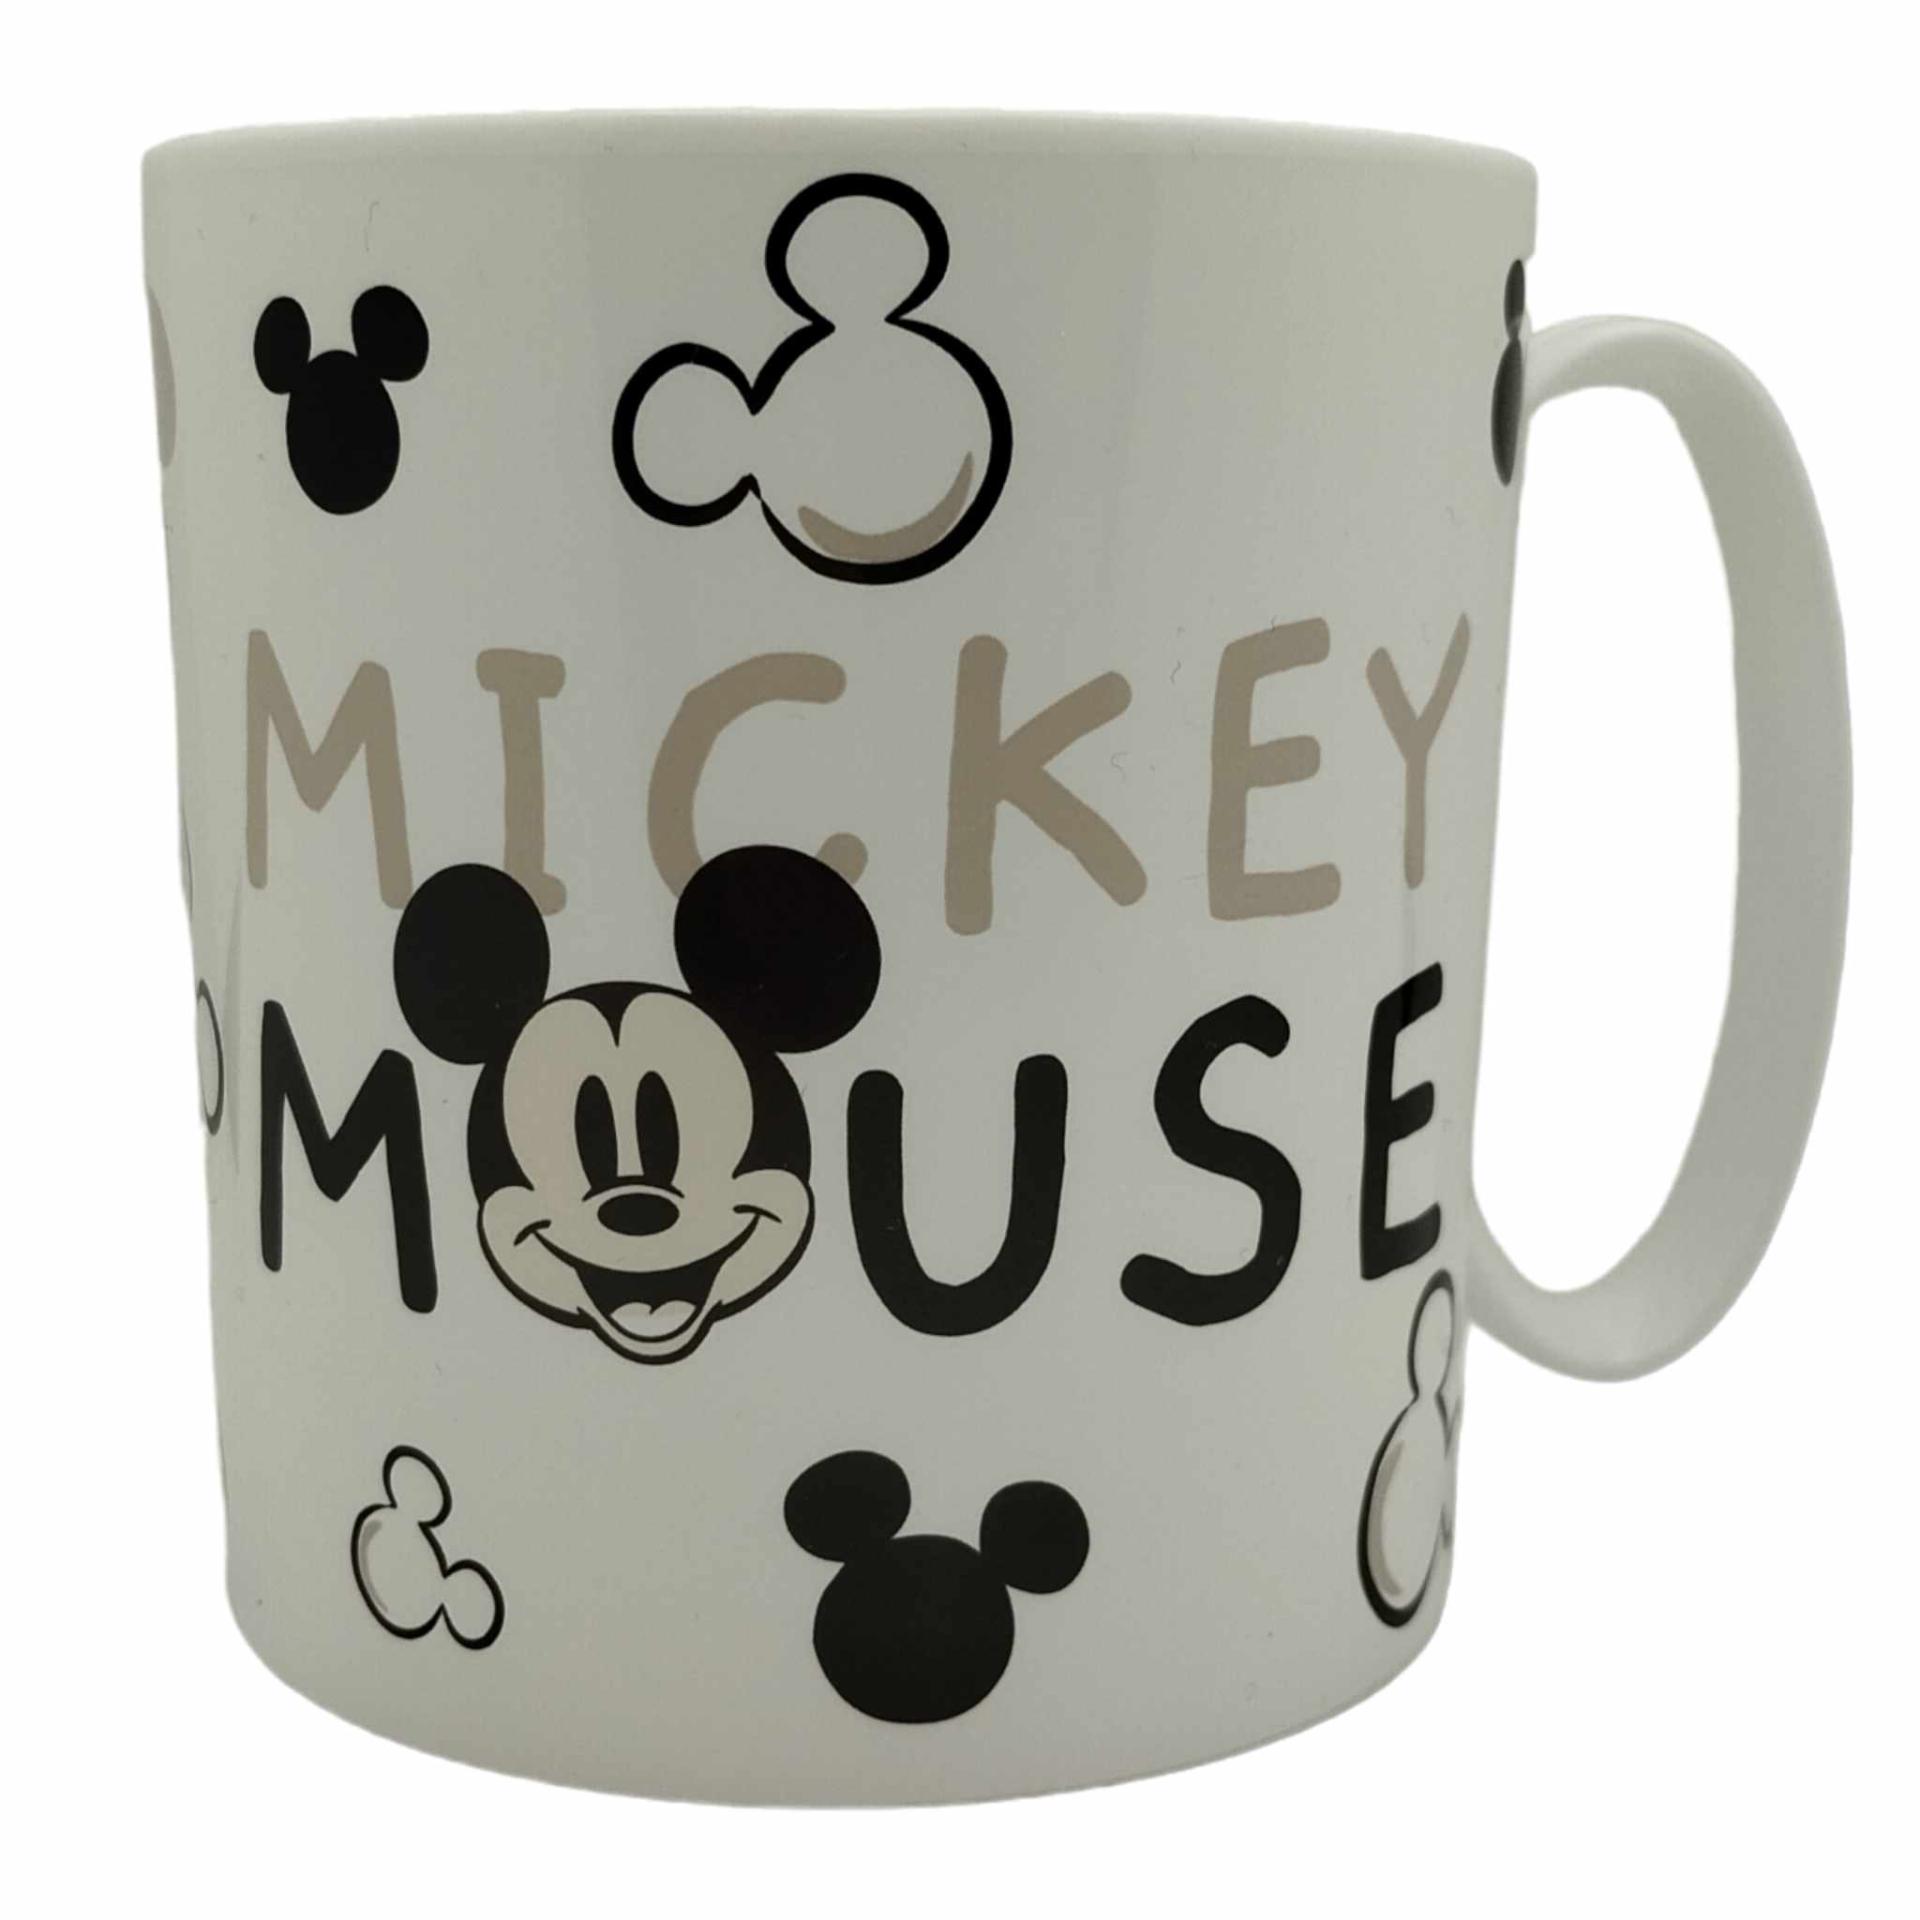 MICKEY MOUSE - Tasse Disney en plastique 390ml pour enfant